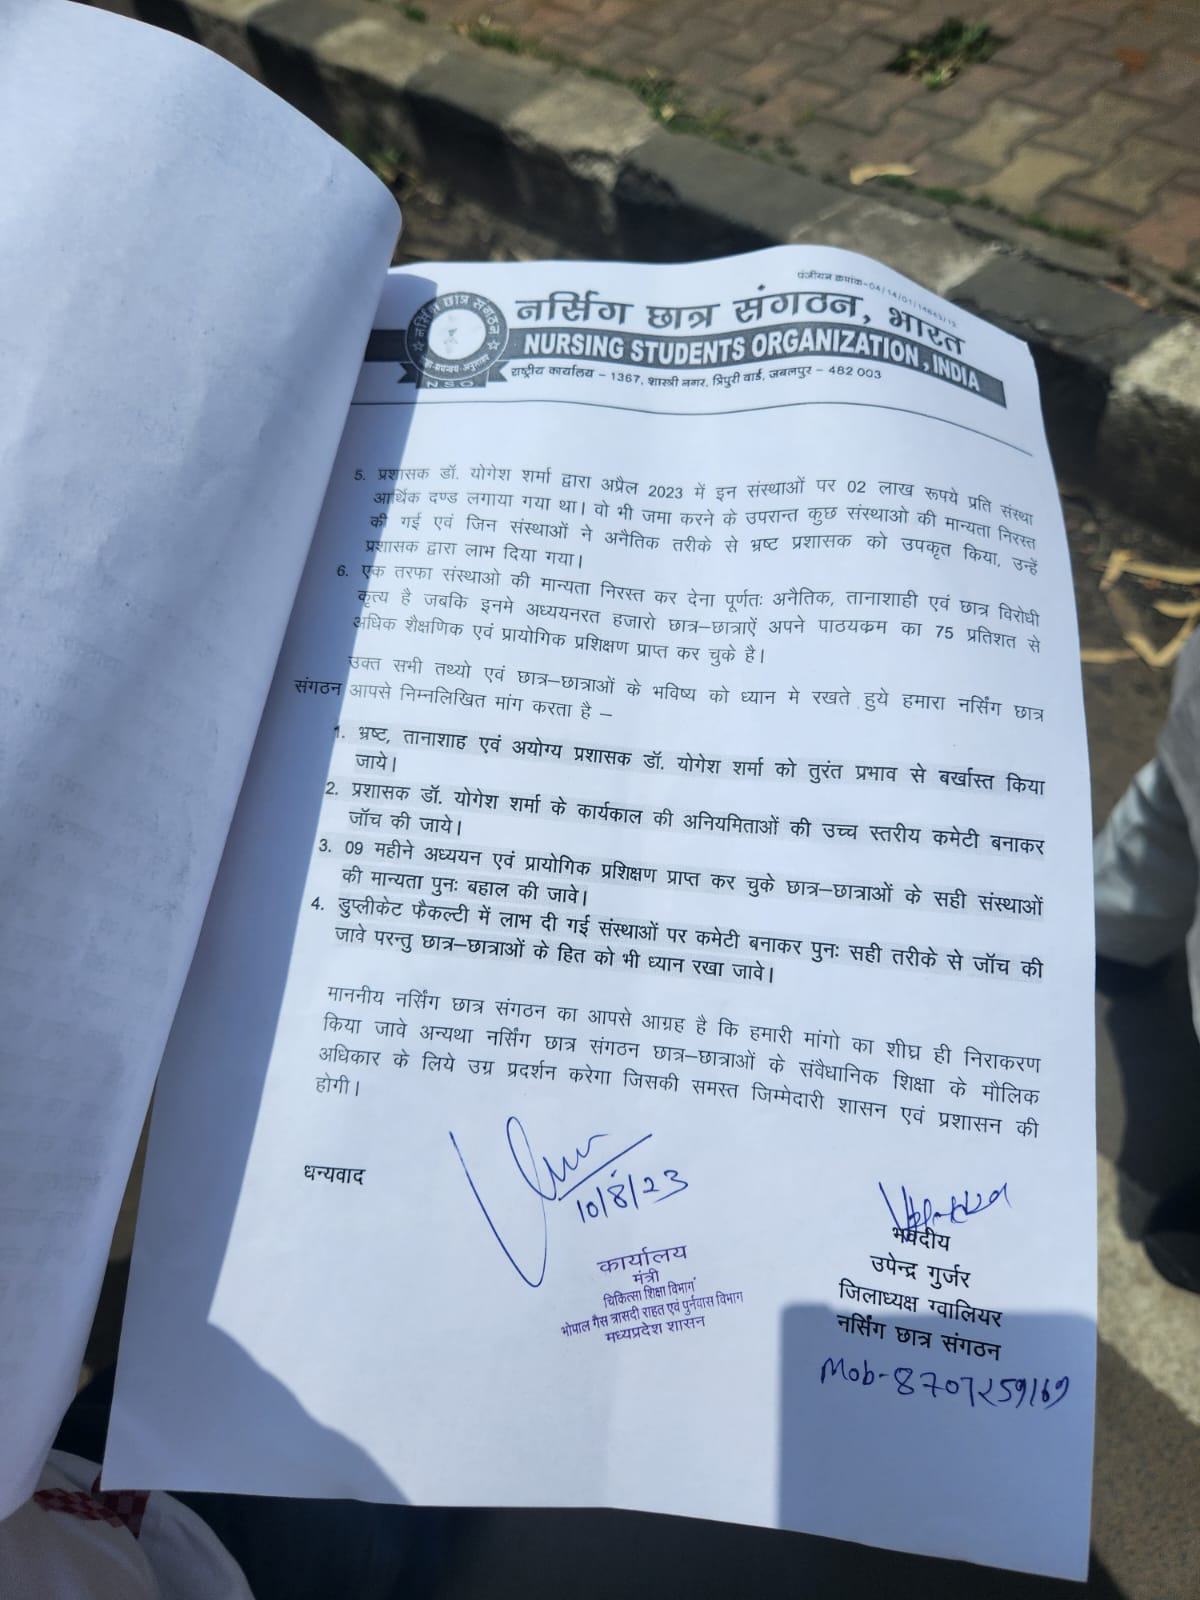 नर्सिंग छात्र संगठन ने की मध्य प्रदेश नर्सेस रजिस्ट्रेशन काउंसिल के प्रशासक को बर्खास्त करने की मांग, विश्वास सारंग को लिखा पत्र